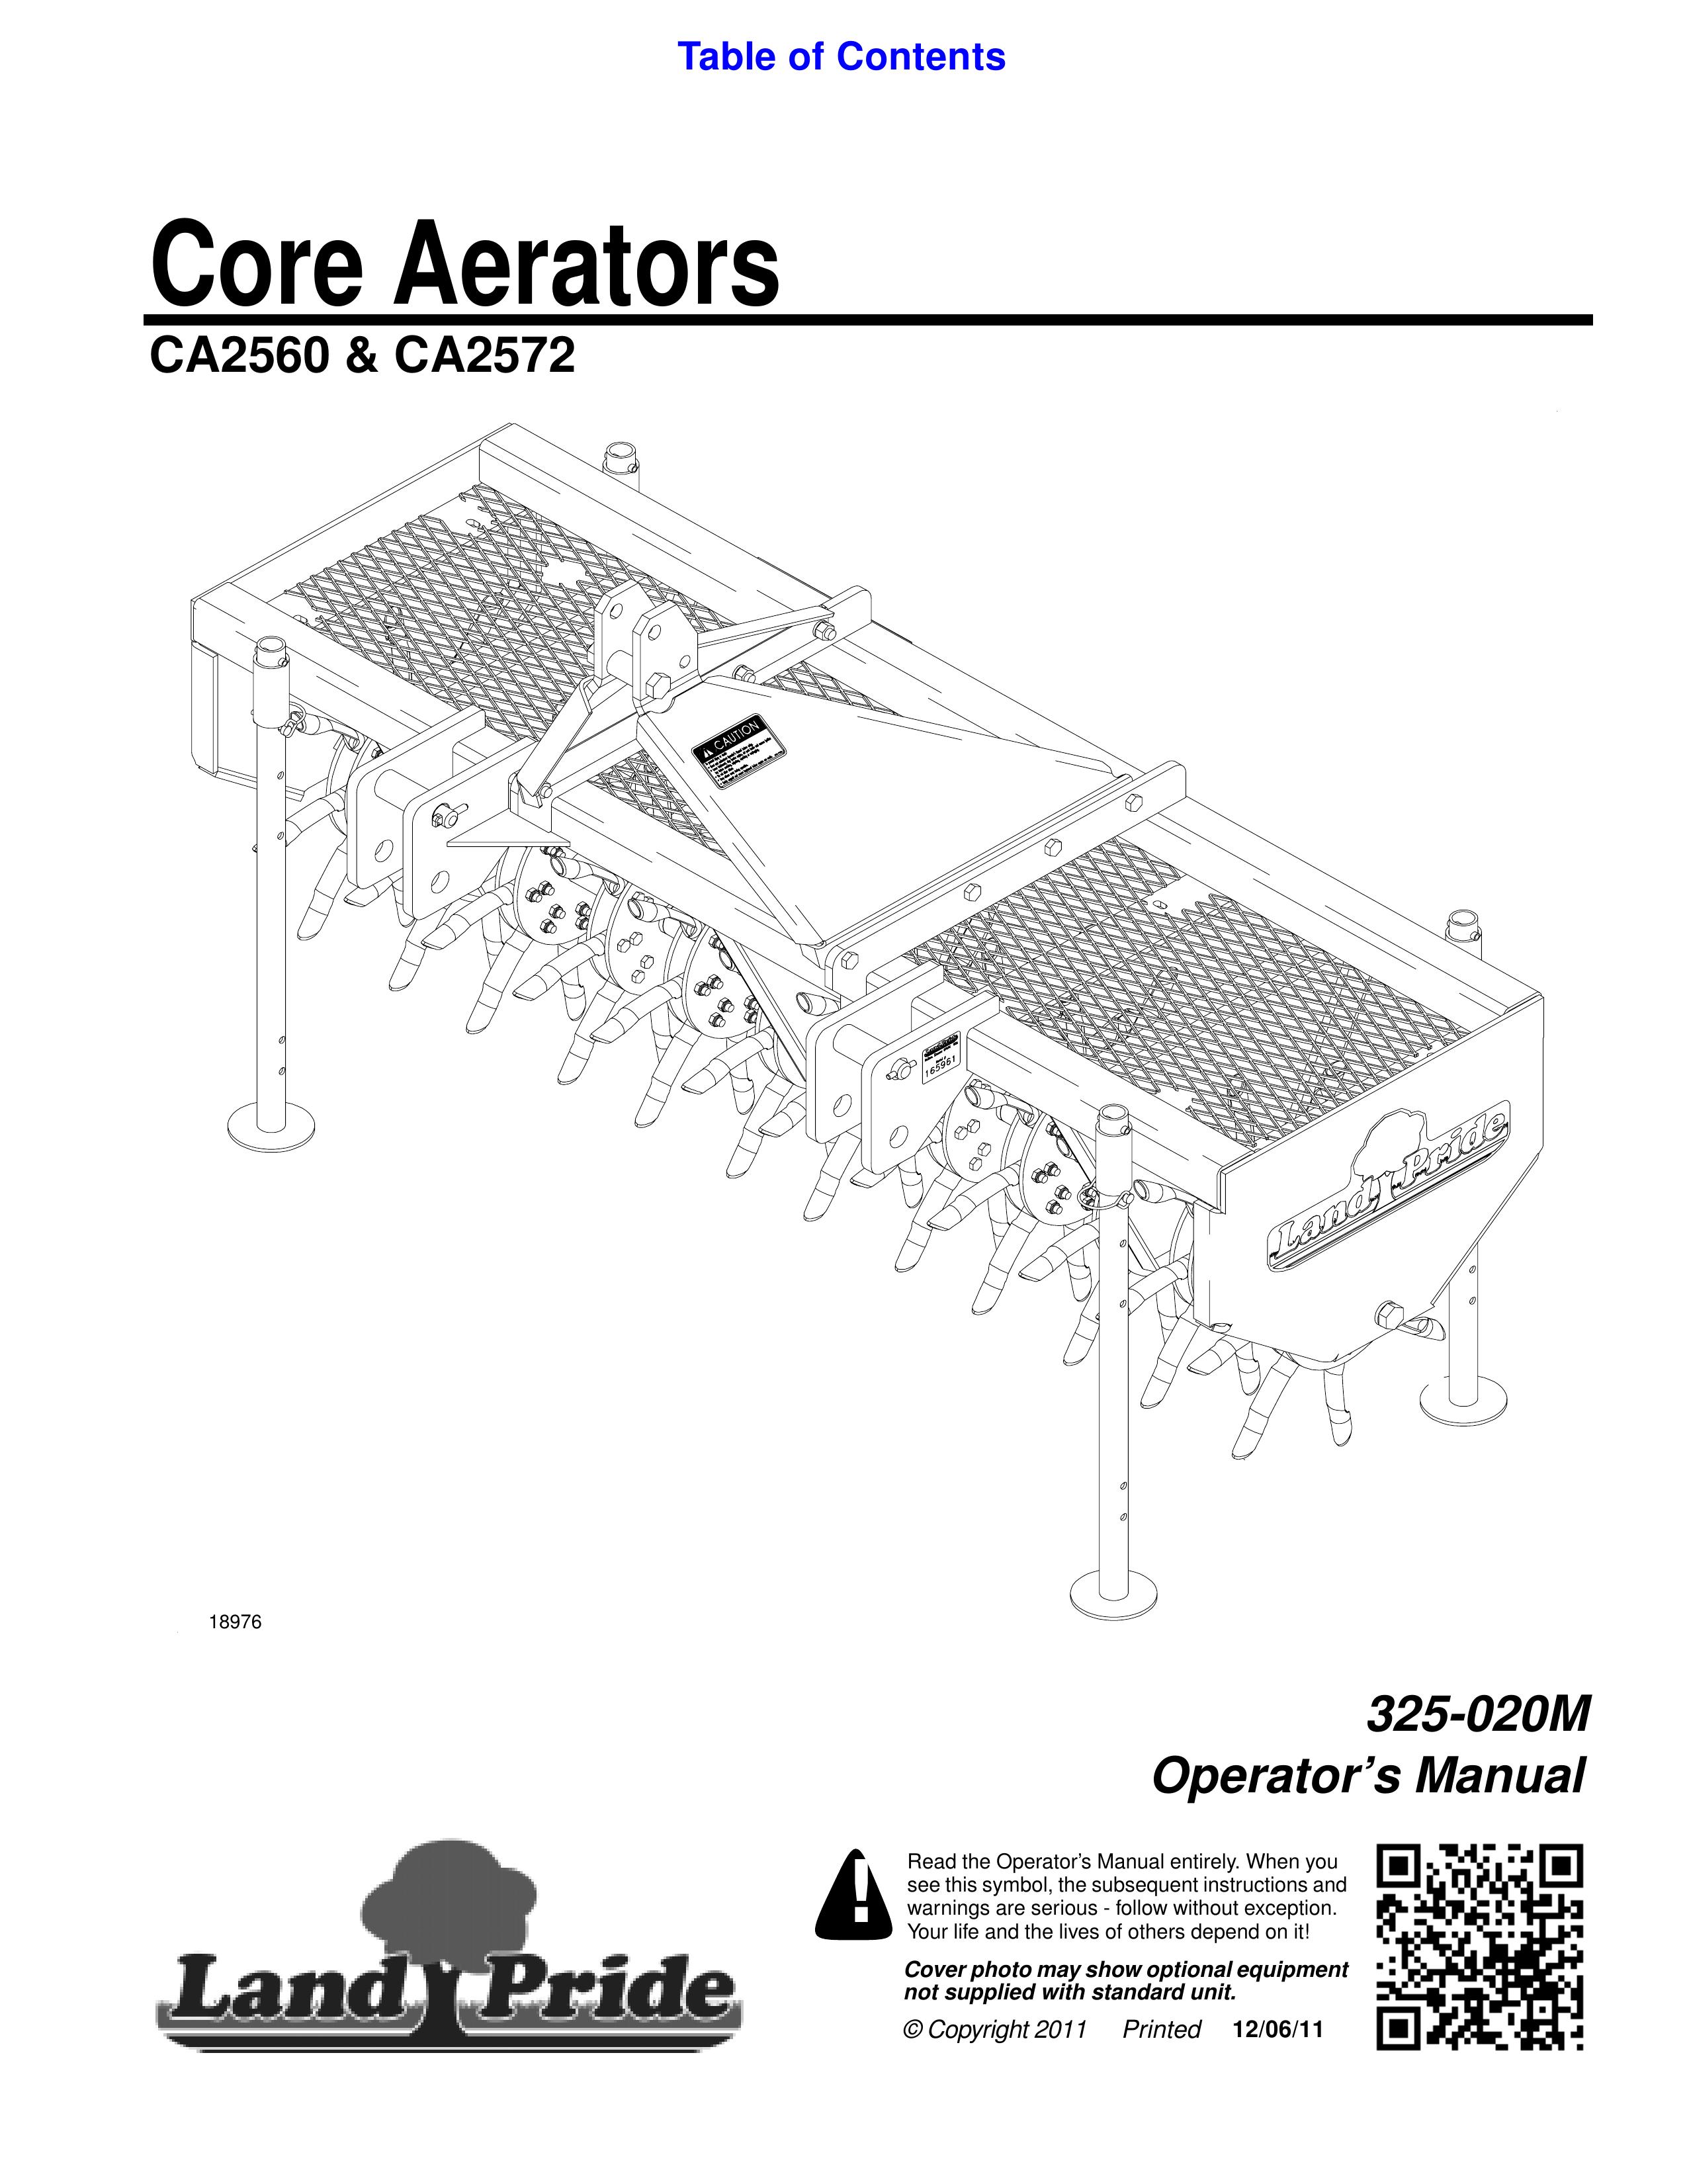 Land Pride CA2560 Lawn Aerator User Manual